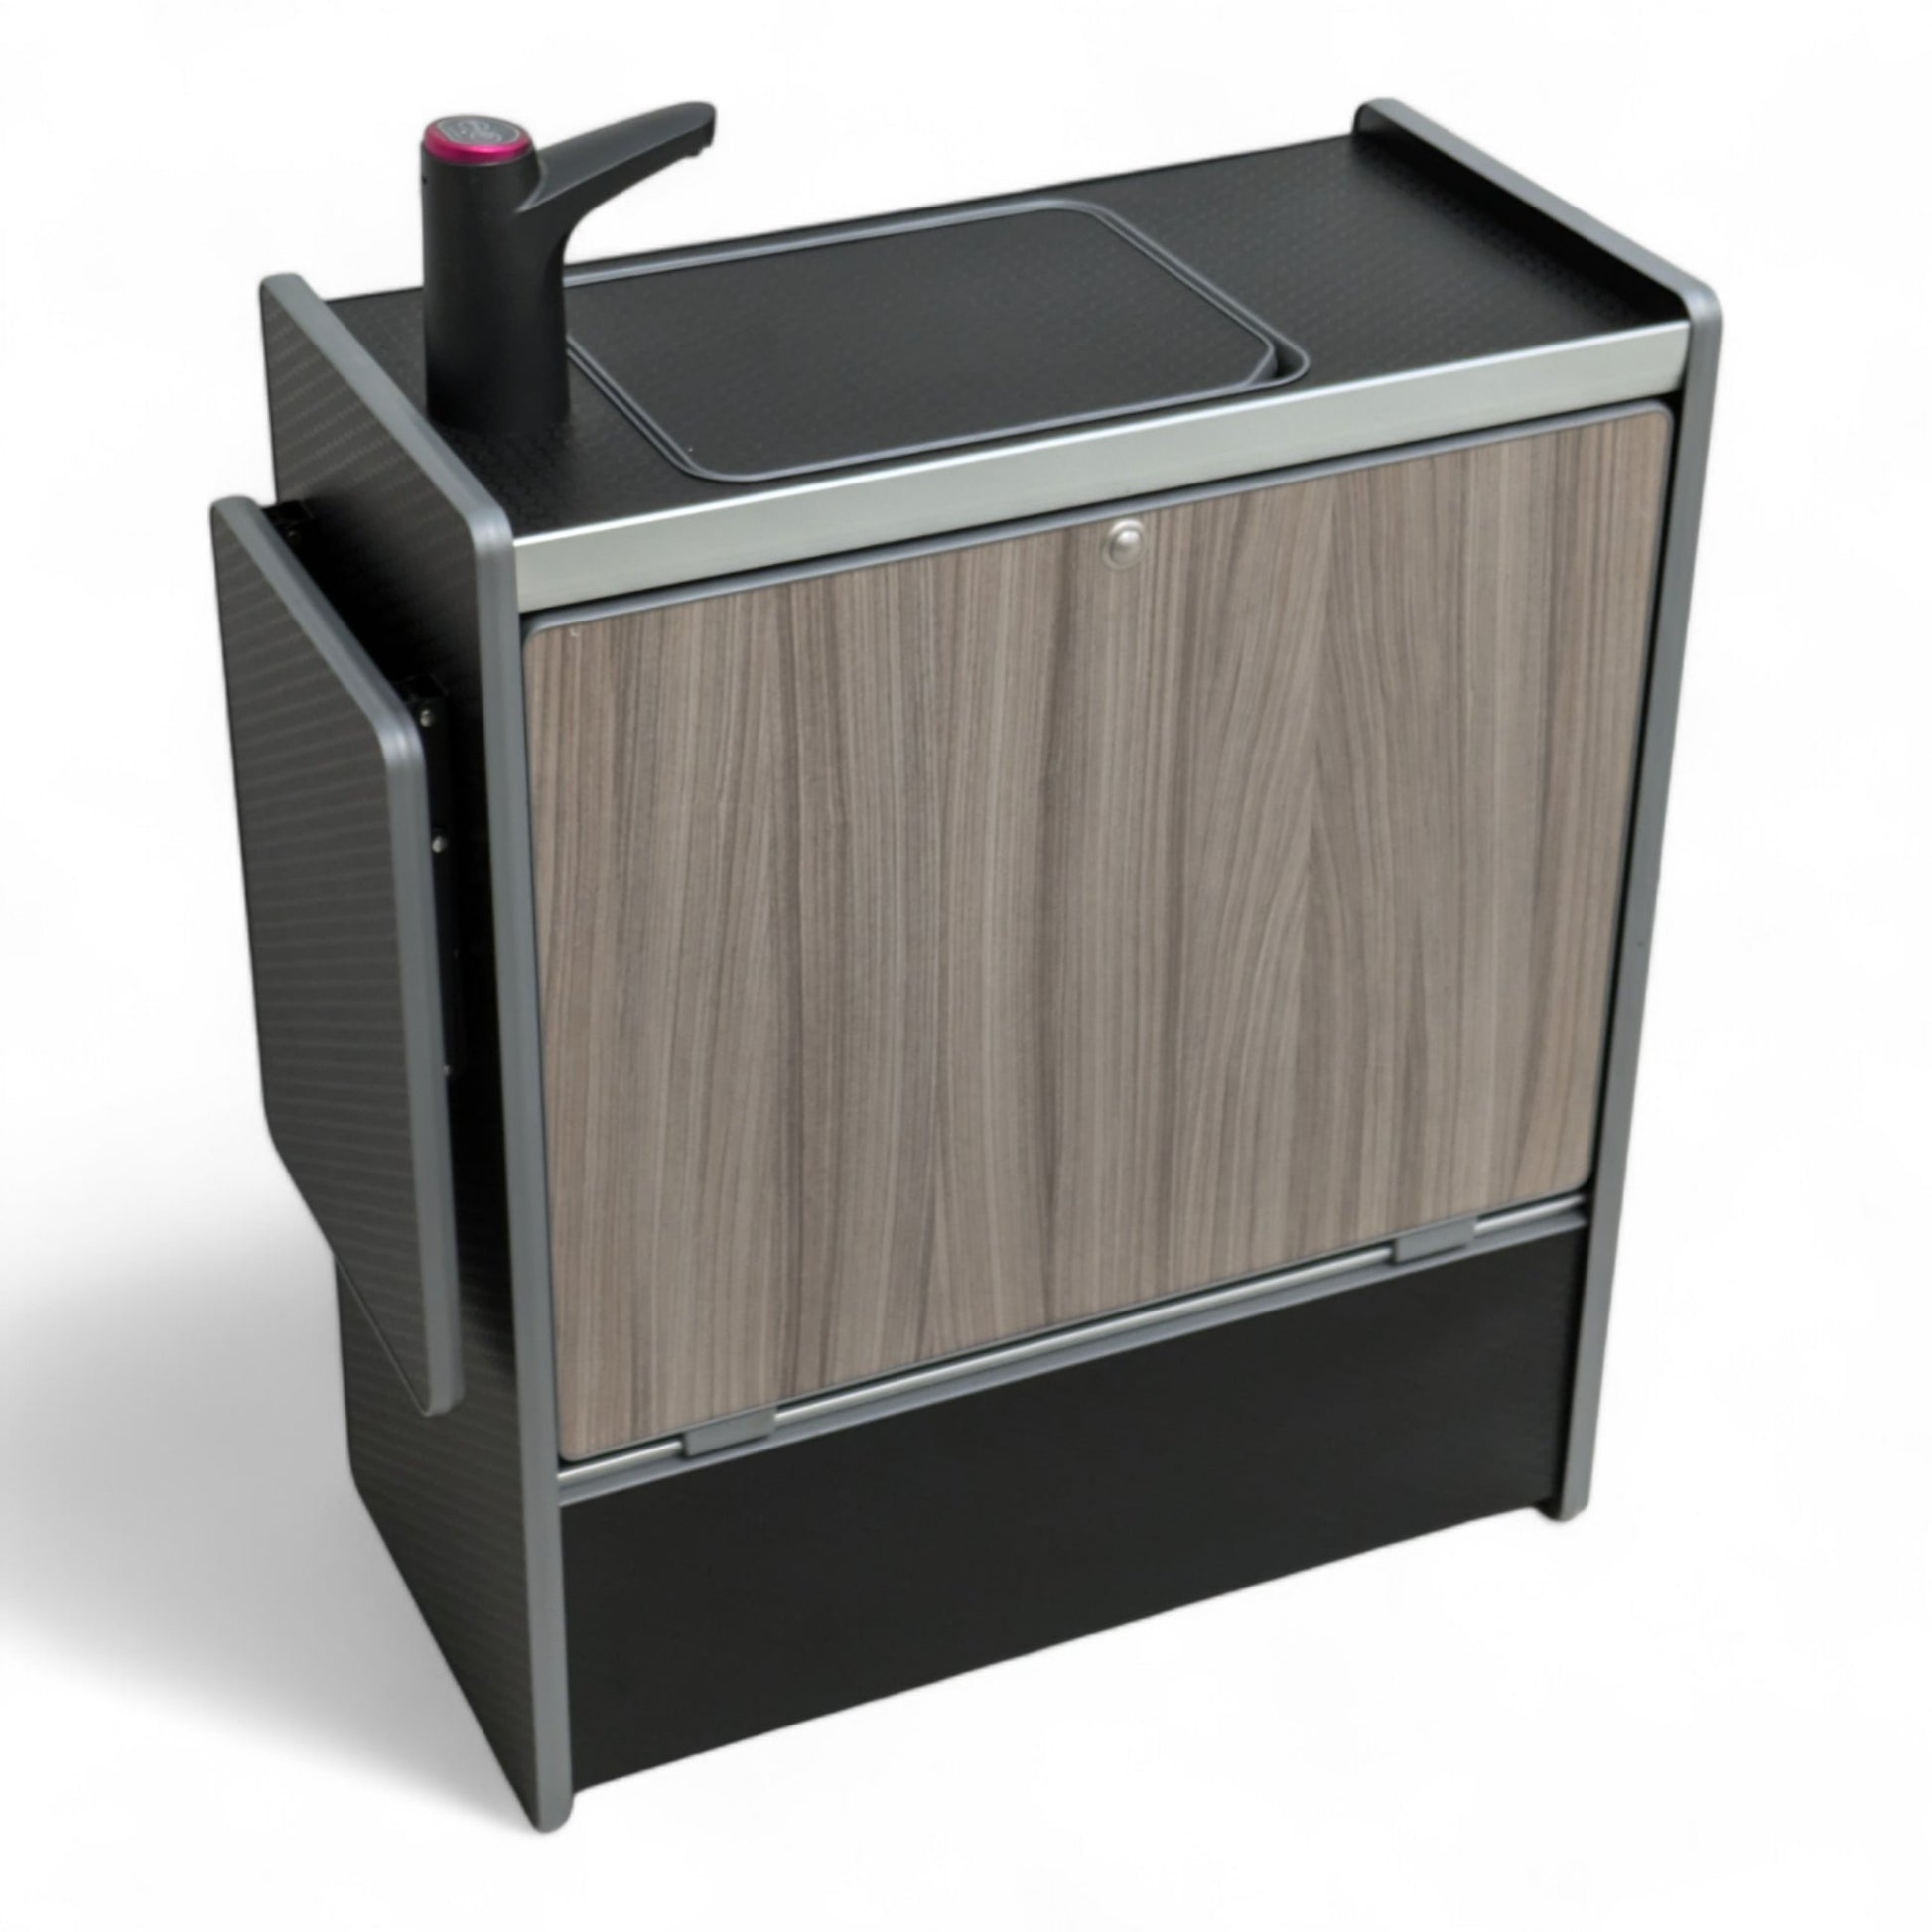 NEW Vangear Nano - Pod 2.2 campervan kitchen - Black with Driftwood door - Vangear - EU